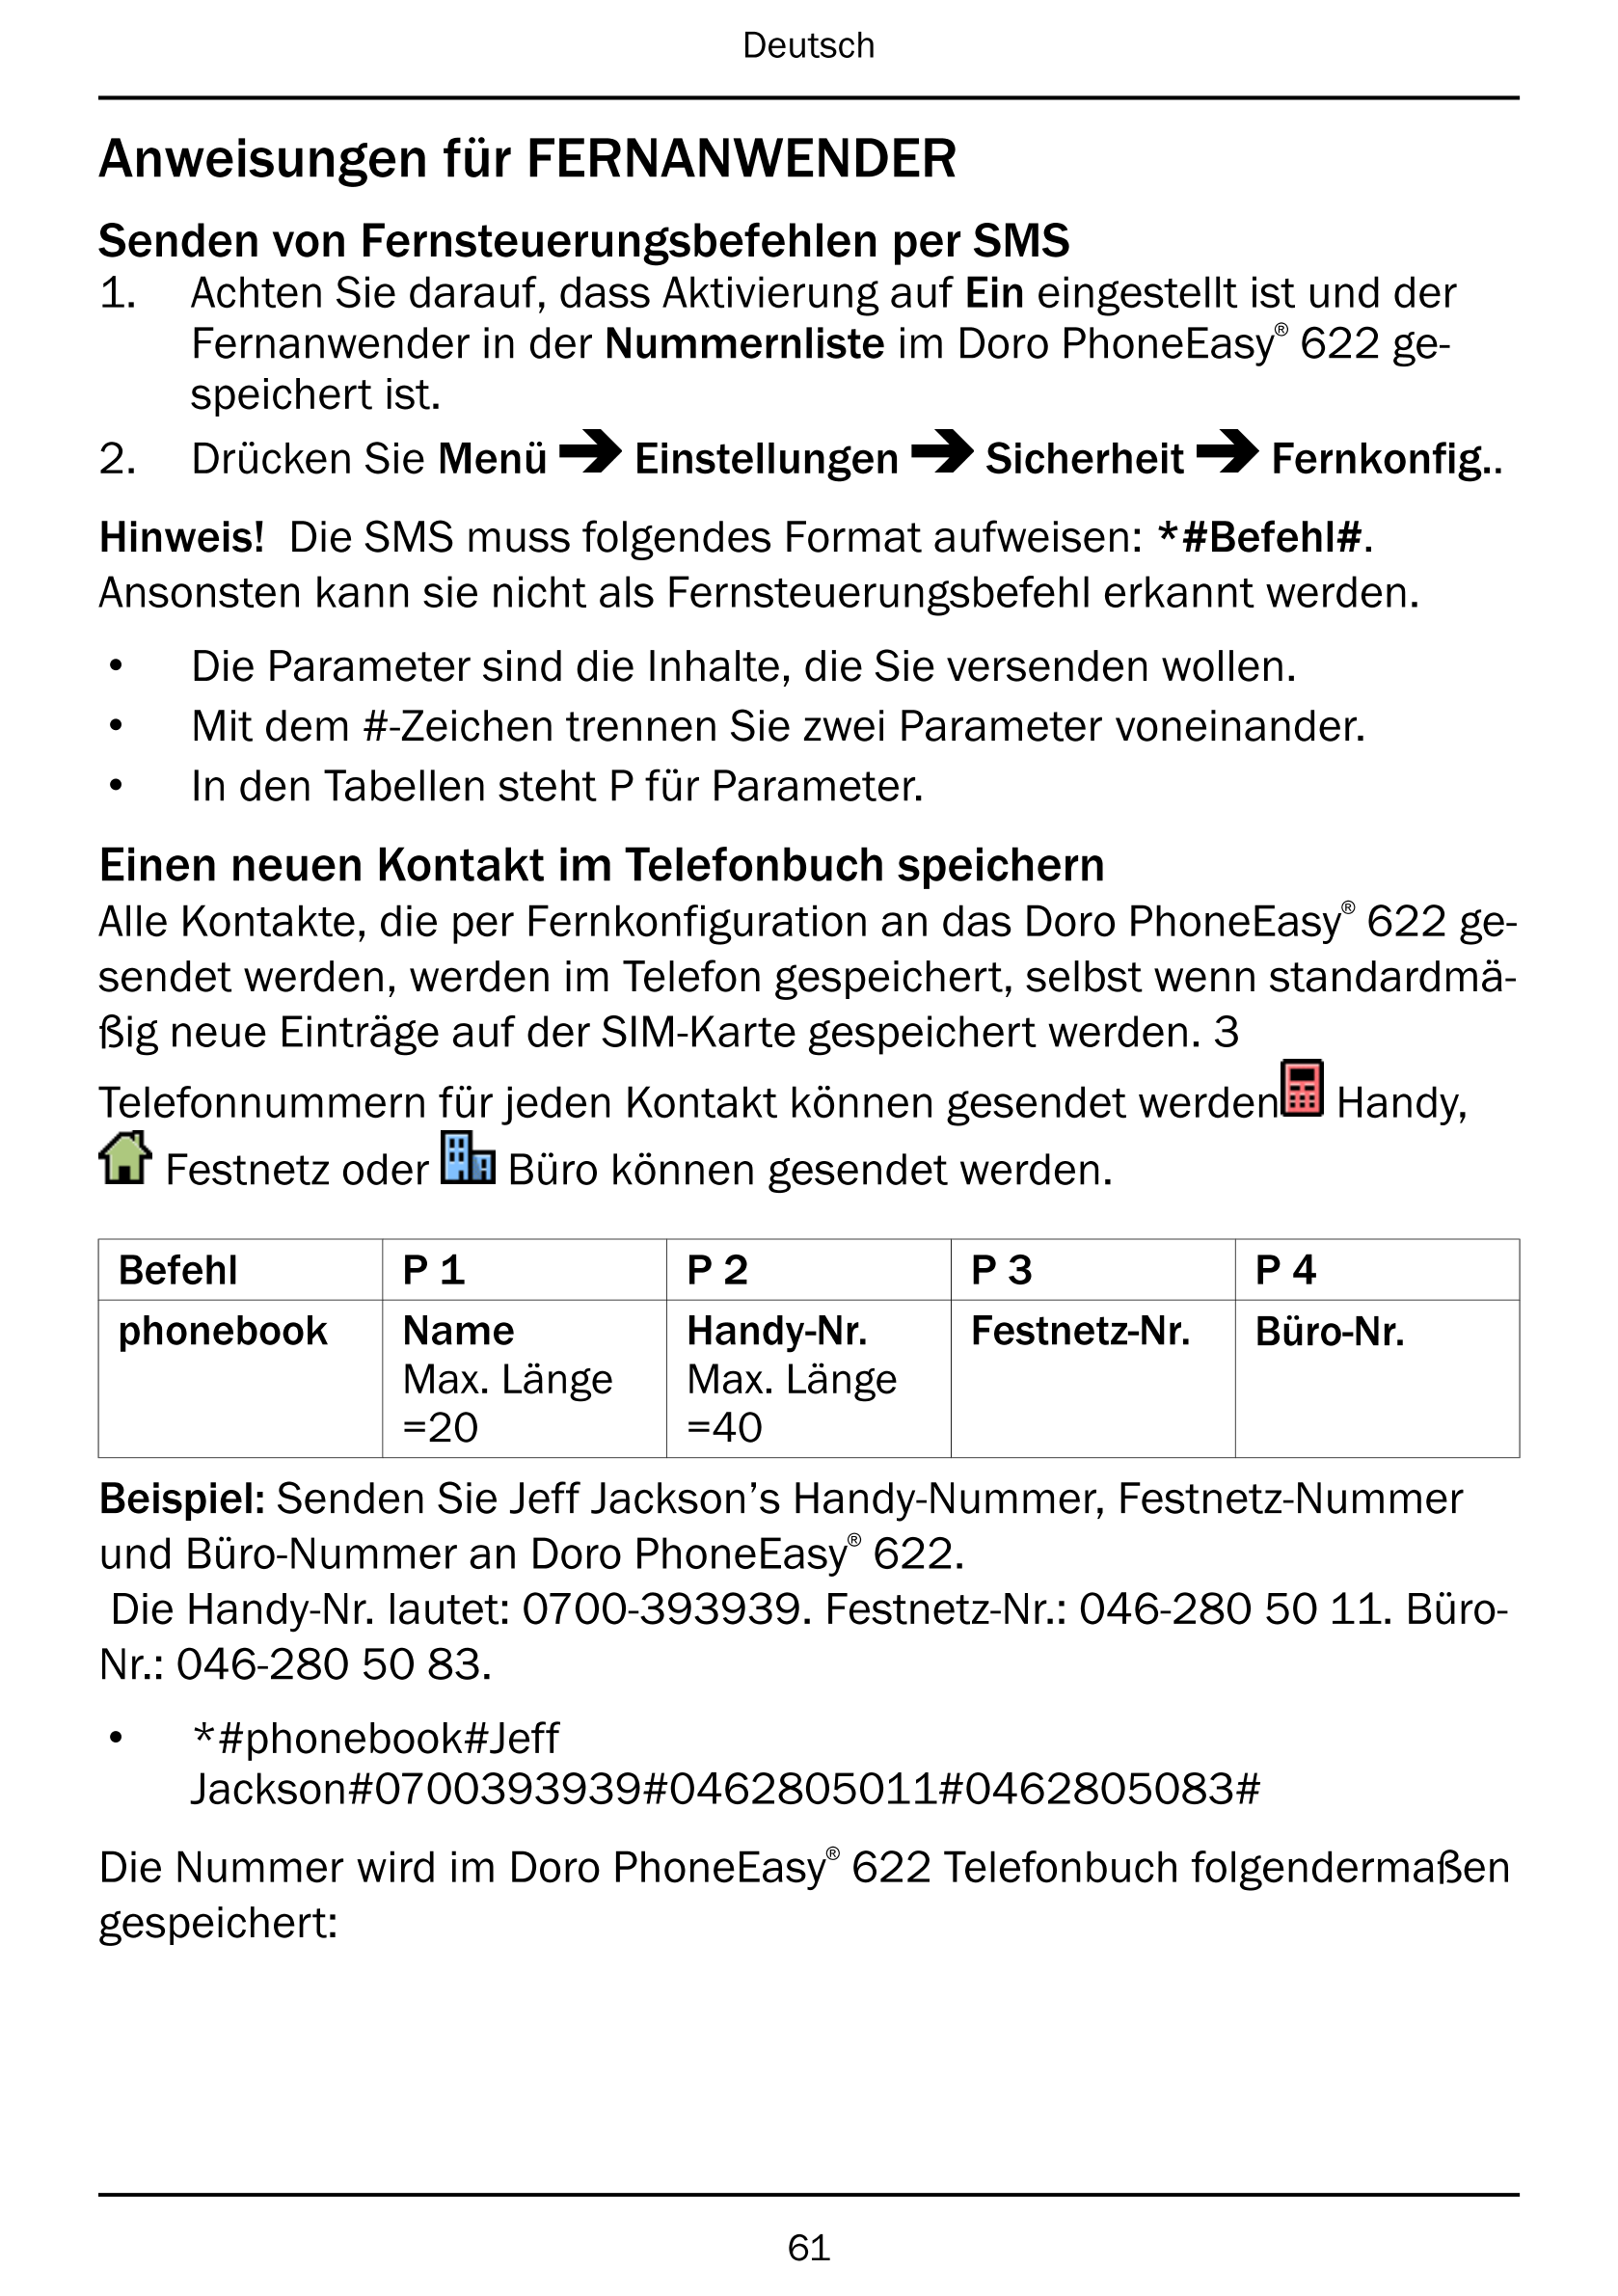 Deutsch
Anweisungen für FERNANWENDER
Senden von Fernsteuerungsbefehlen per SMS
1.     Achten Sie darauf, dass Aktivierung auf Ei